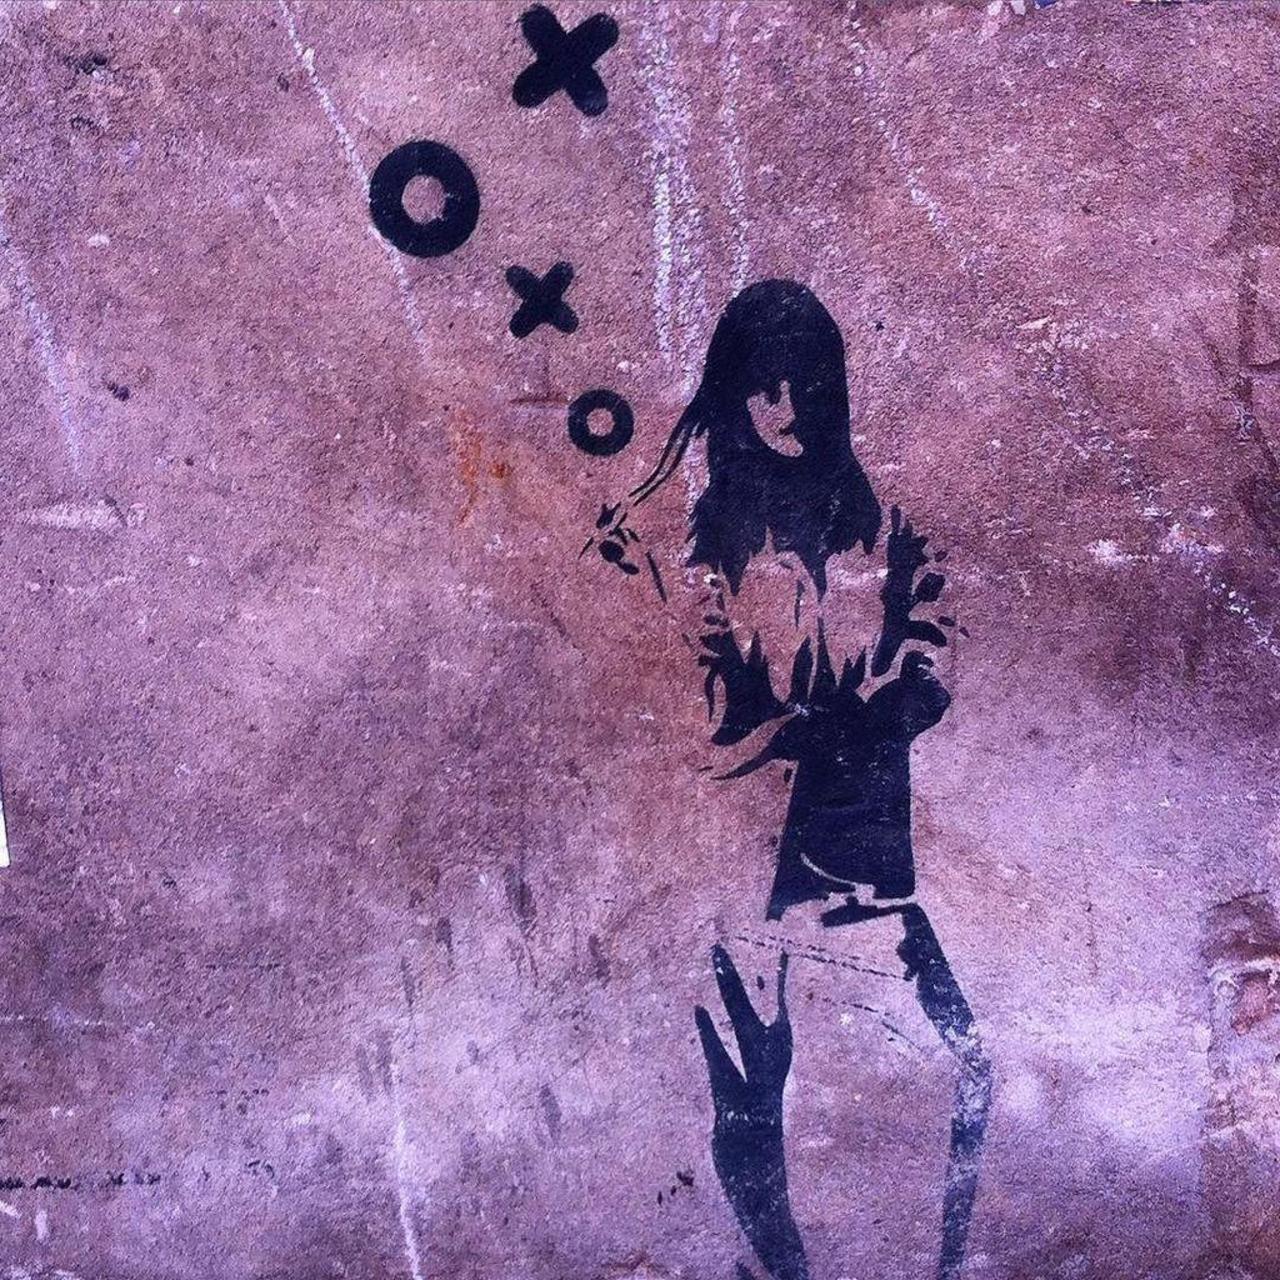 #Xoooox #girl #stencil #streetart #urbanart #black #sprayart #artlover #graffiti #streetartberlin #wallart #weloves… http://t.co/WTPFllY4C6